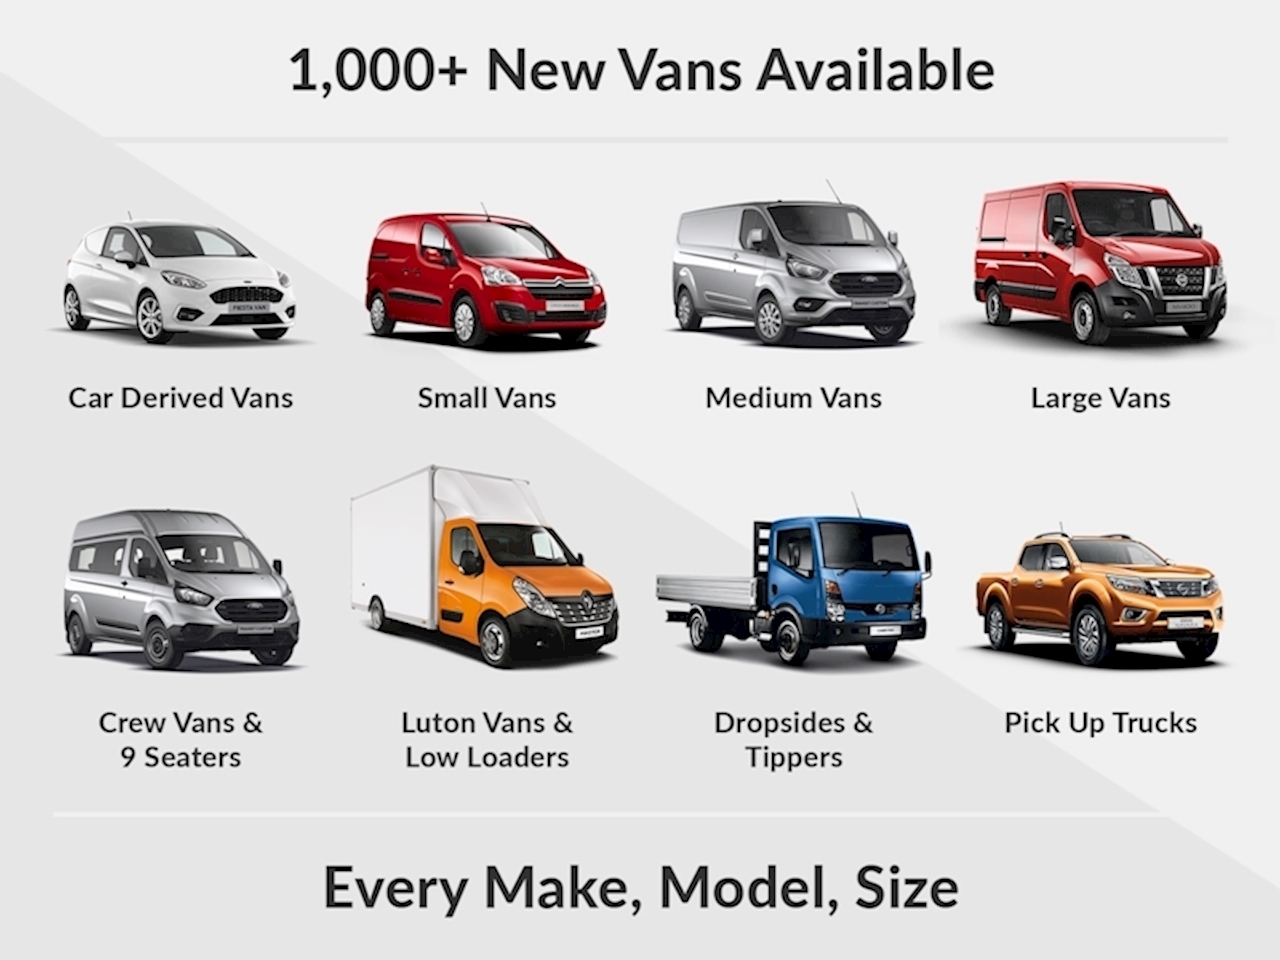 Deliver 9 Van New Van 2.0 LARGE VAN M